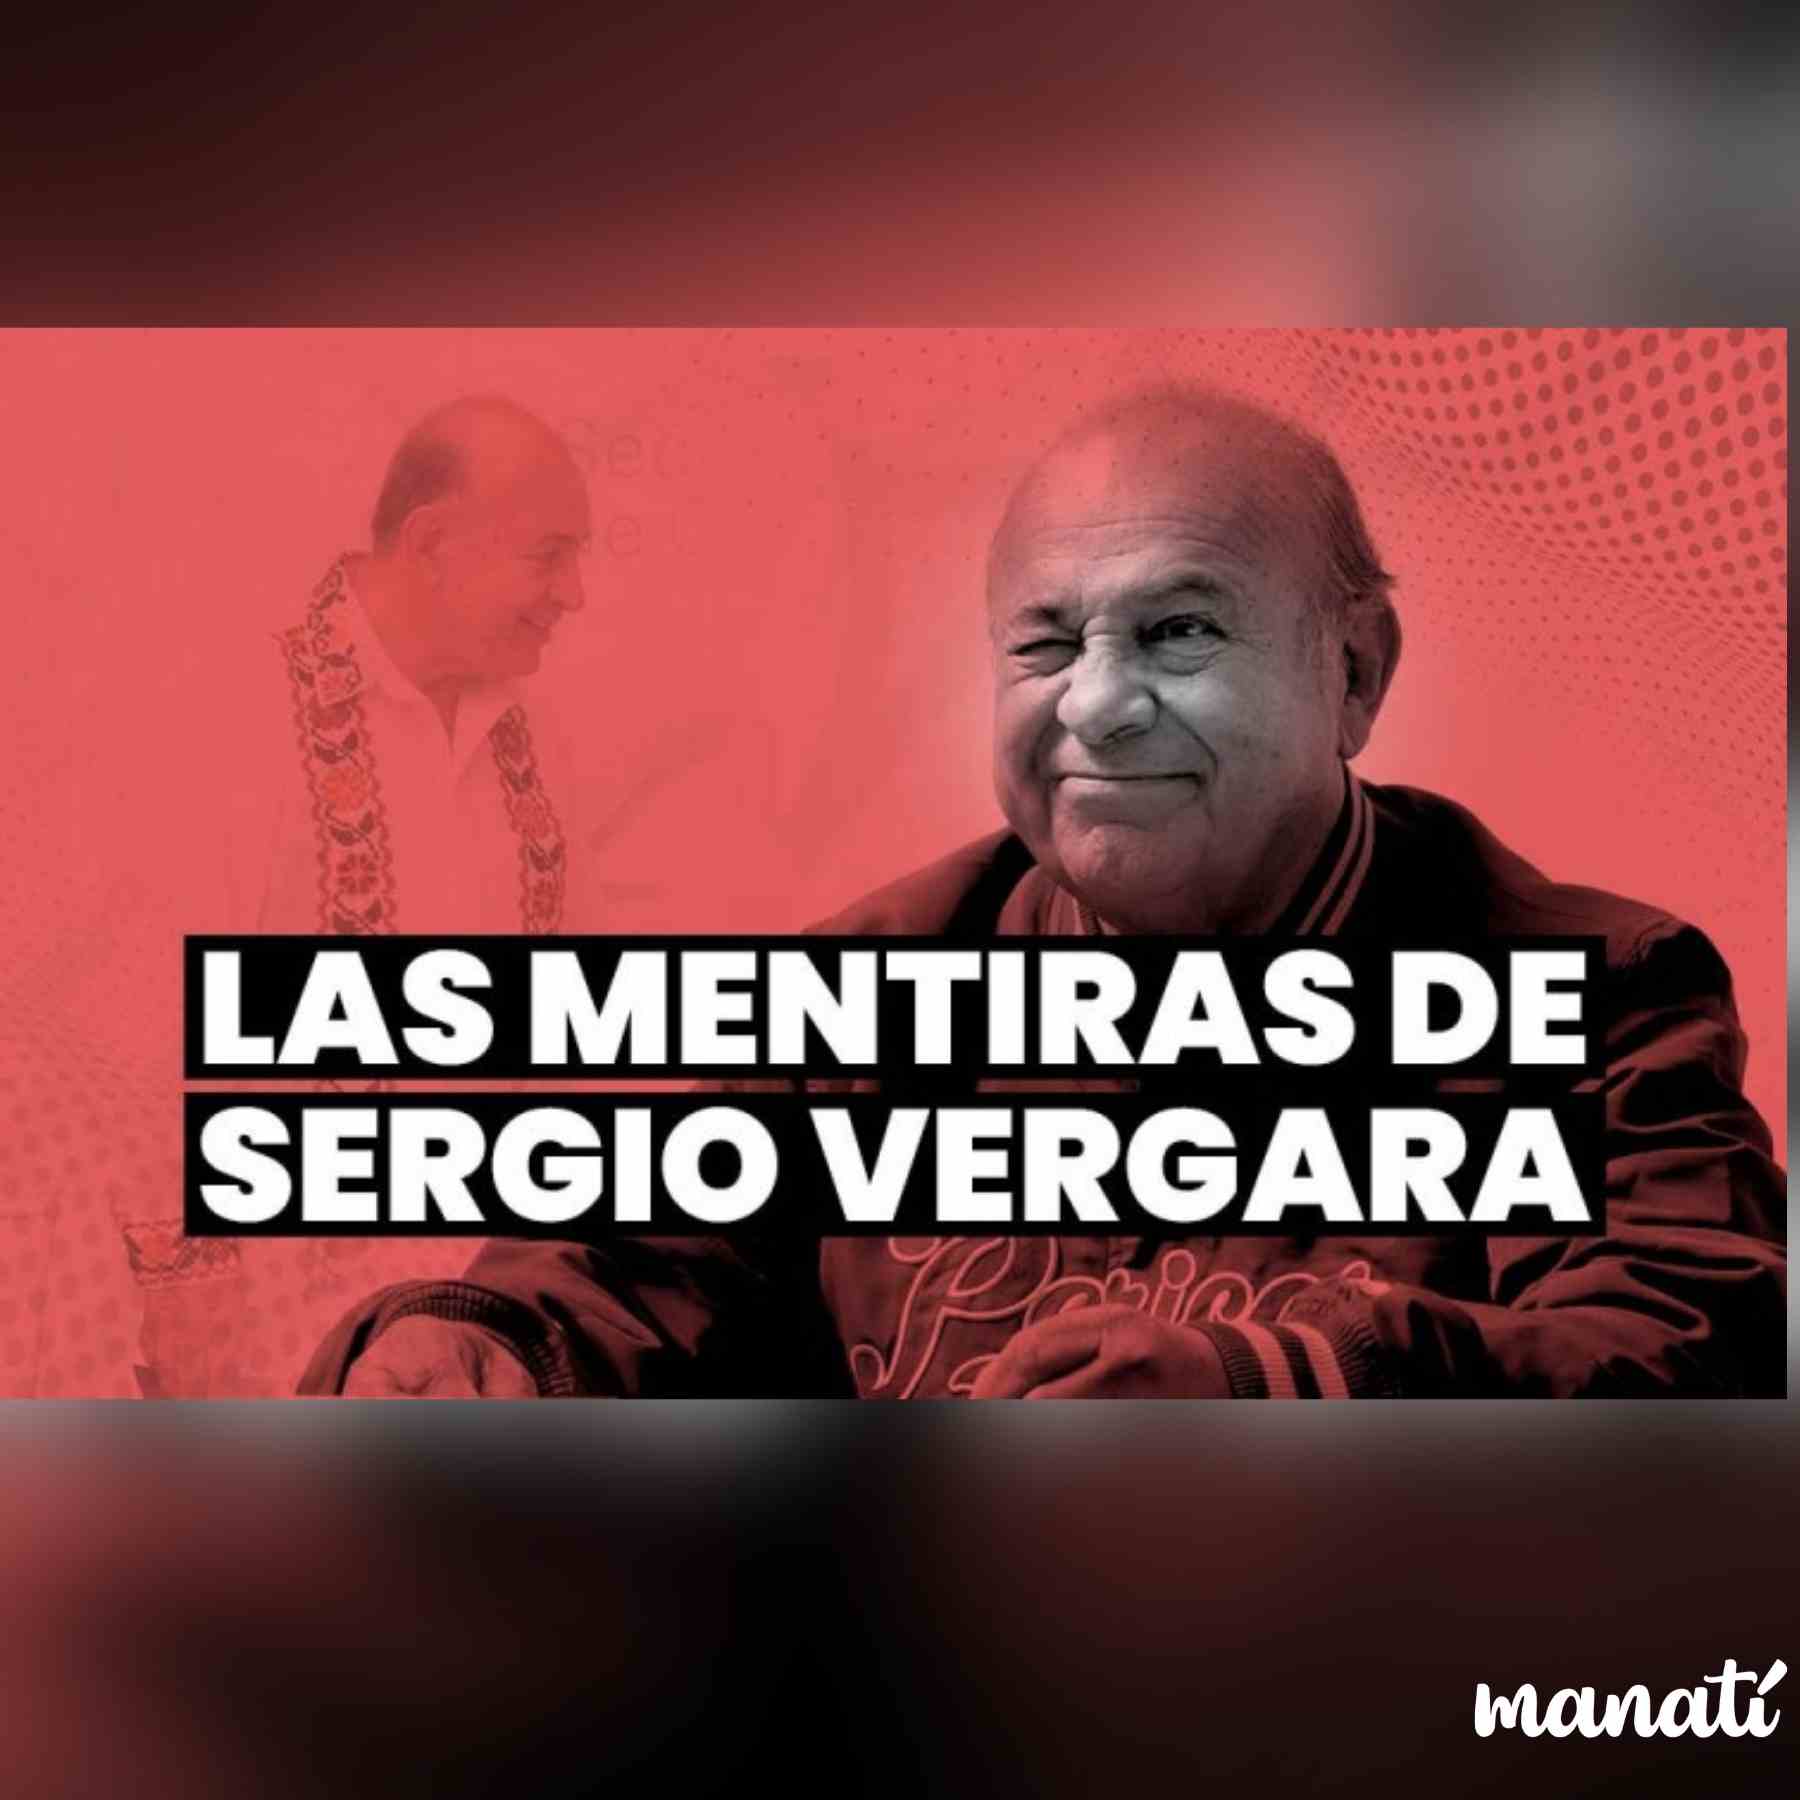 Sergio Veragara mentiras